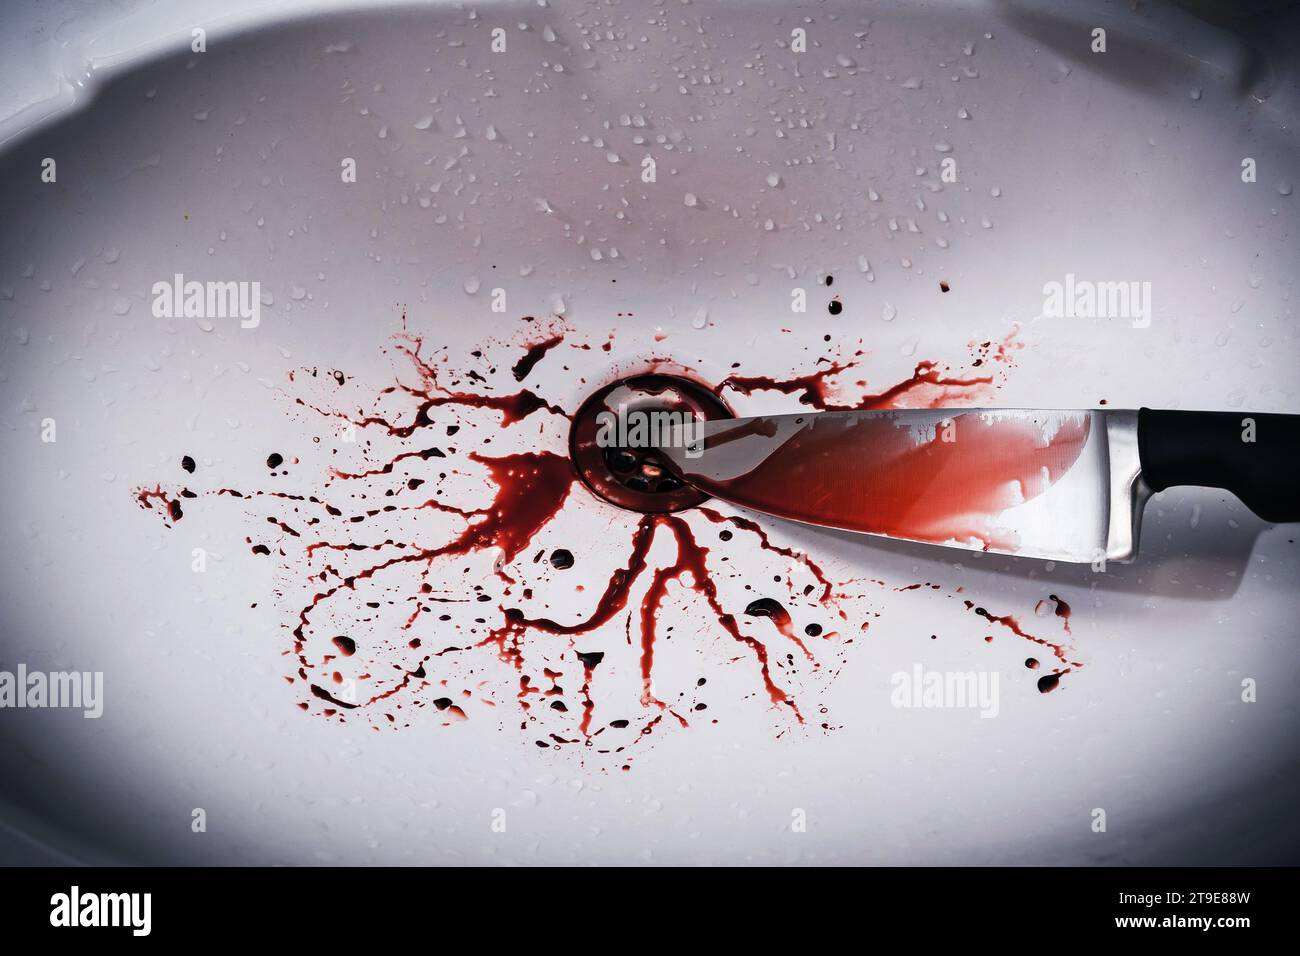 Nahaufnahme des schmutzigen Waschbeckens im Bad mit Blutspritzern und Messer Stockfoto